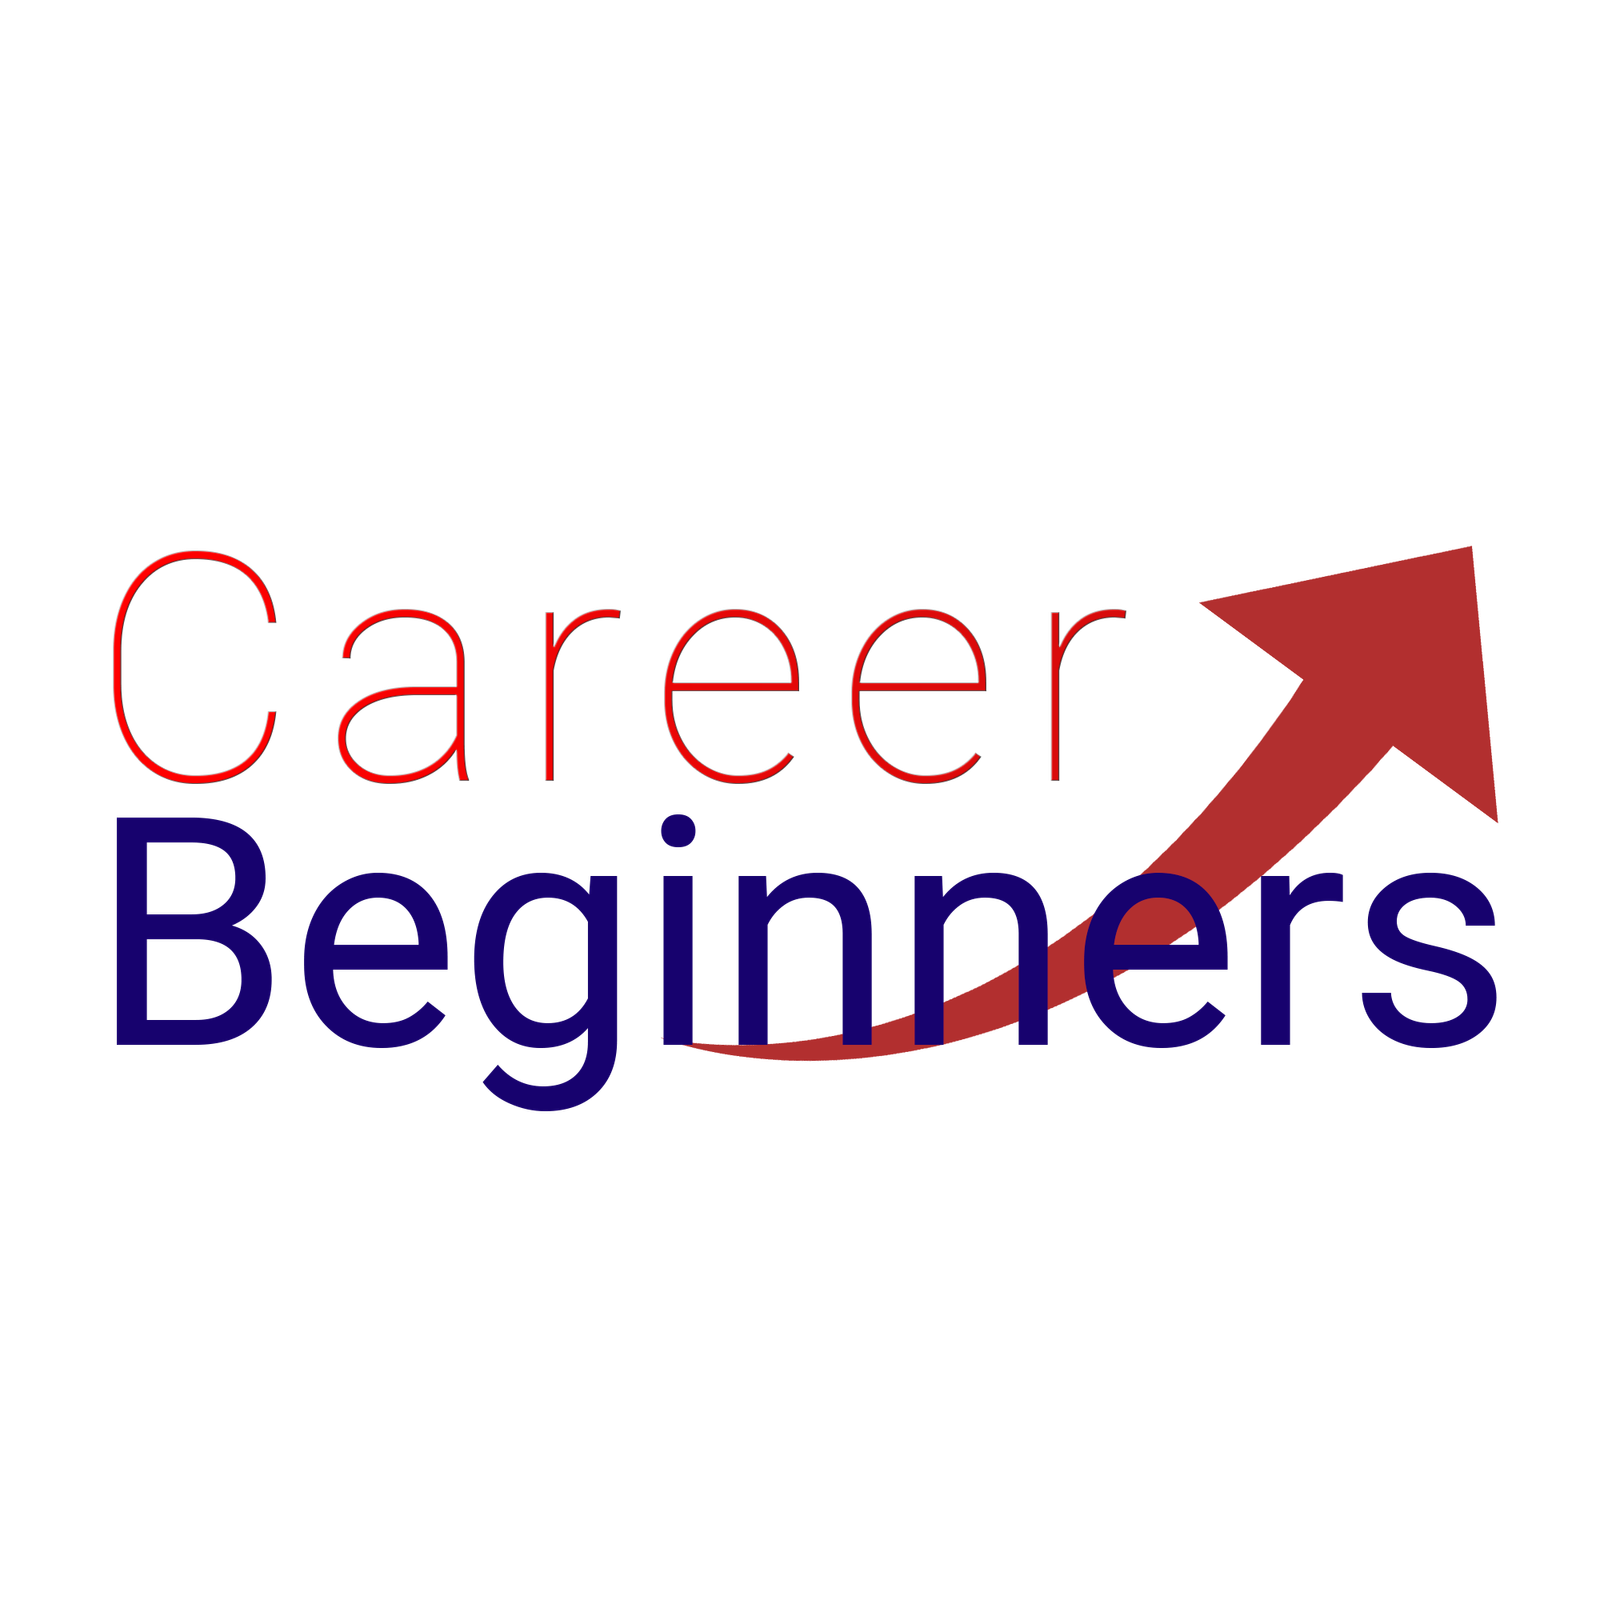 Career Beginners